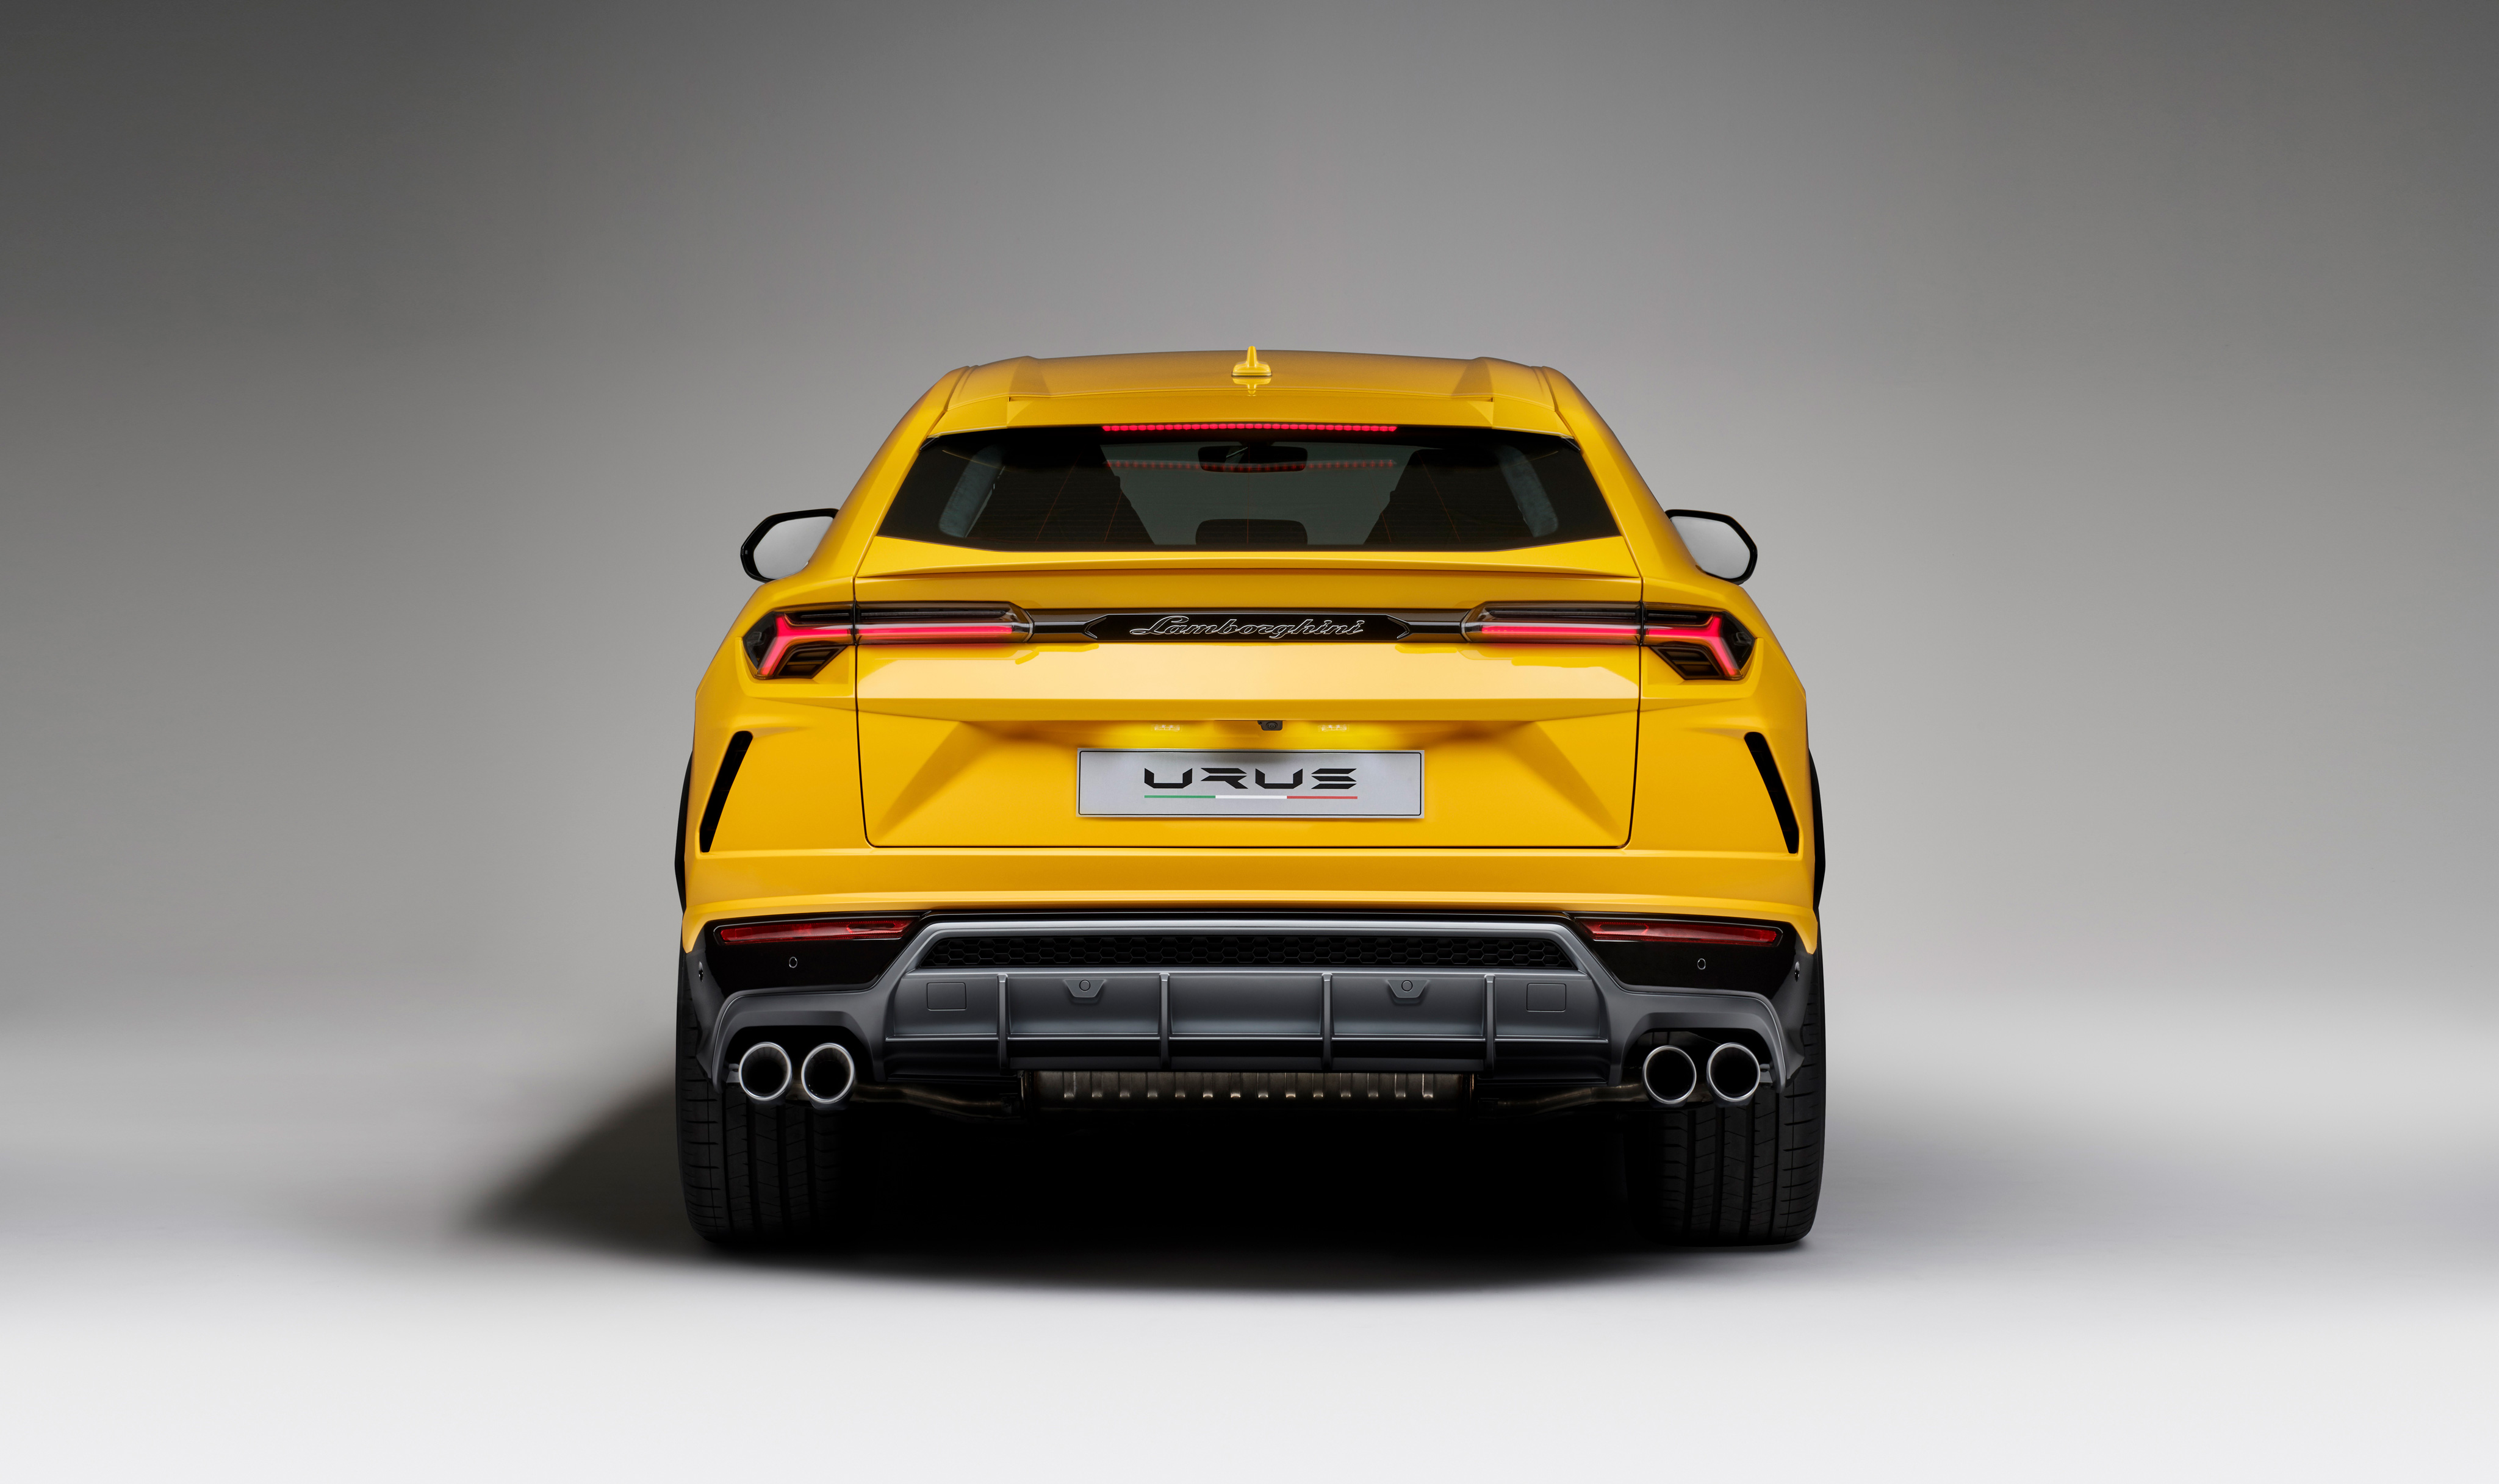 Wallpapers suv Lamborghini 2018 cars on the desktop